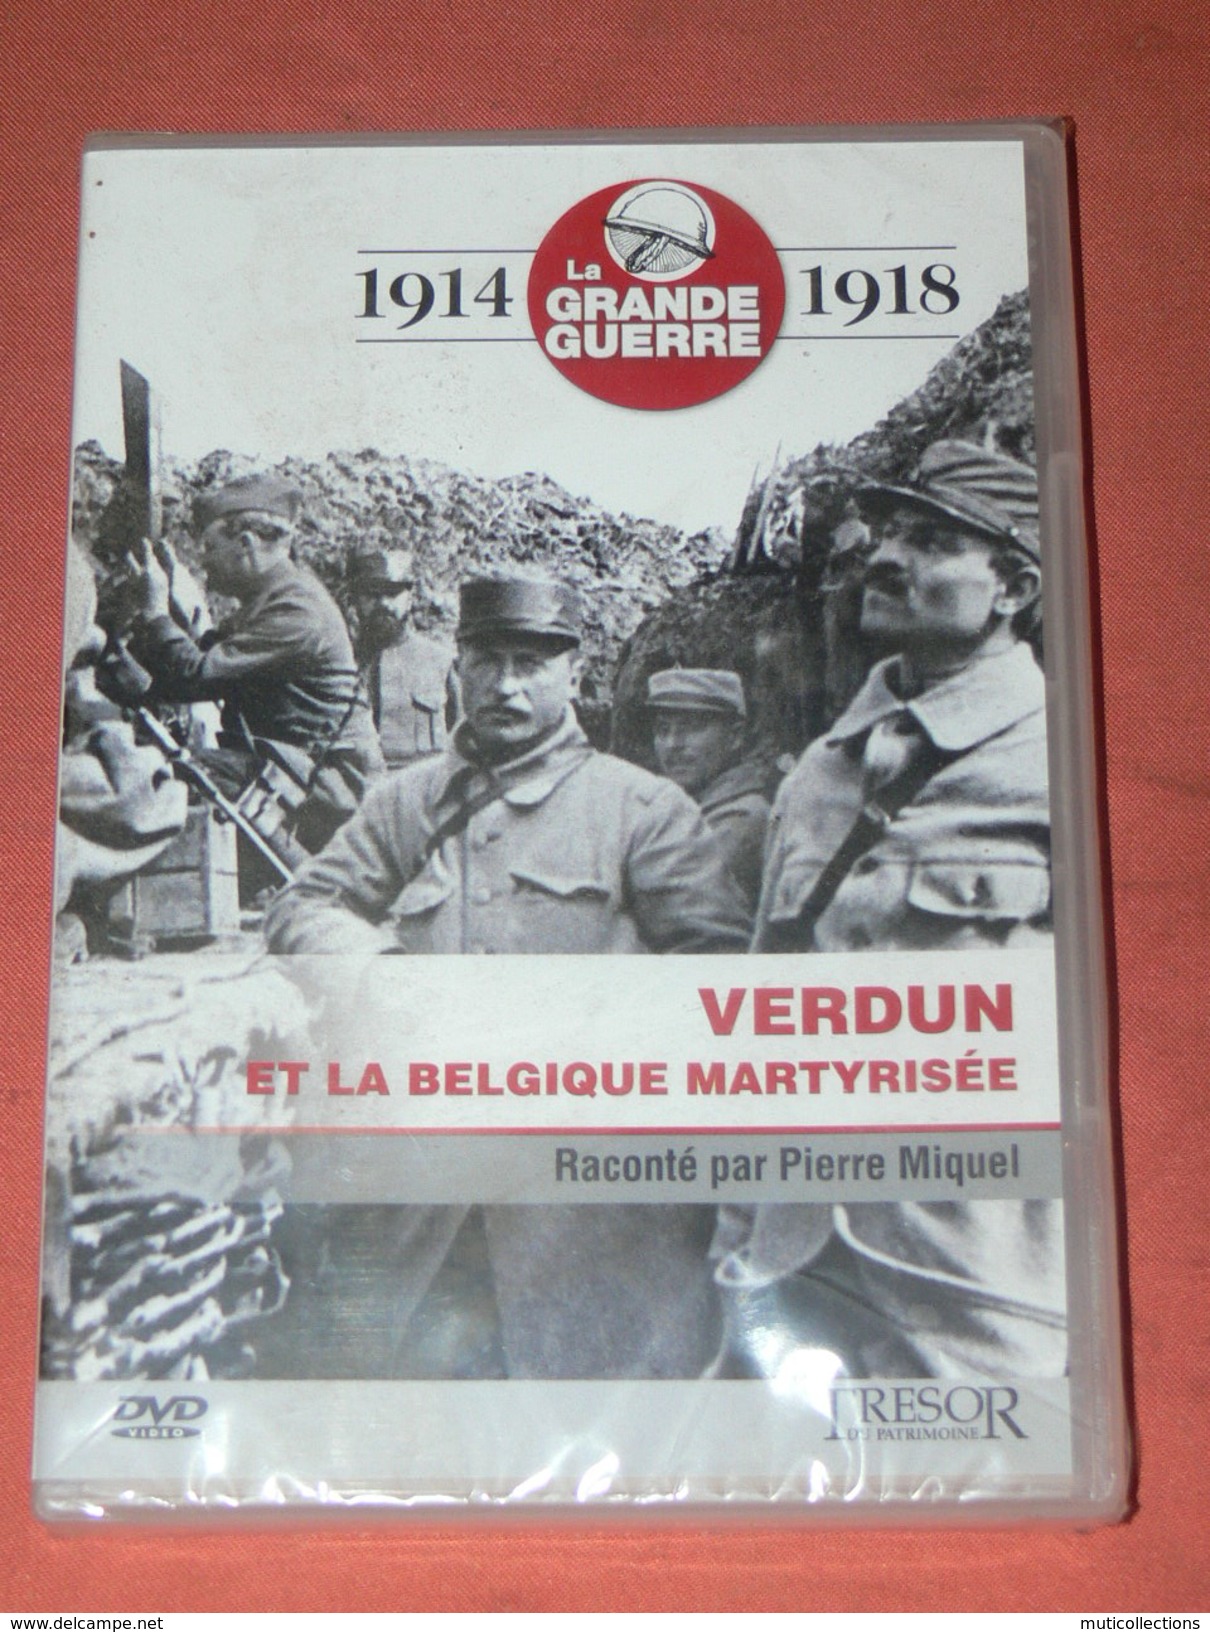 DVD  / 1914 / 1918 LA GRANDE GUERRE WWI   / VERDUN ET LA BELGIQUE MARTYRISEE /  DVD NEUF SOUS BLISTER - Music On DVD